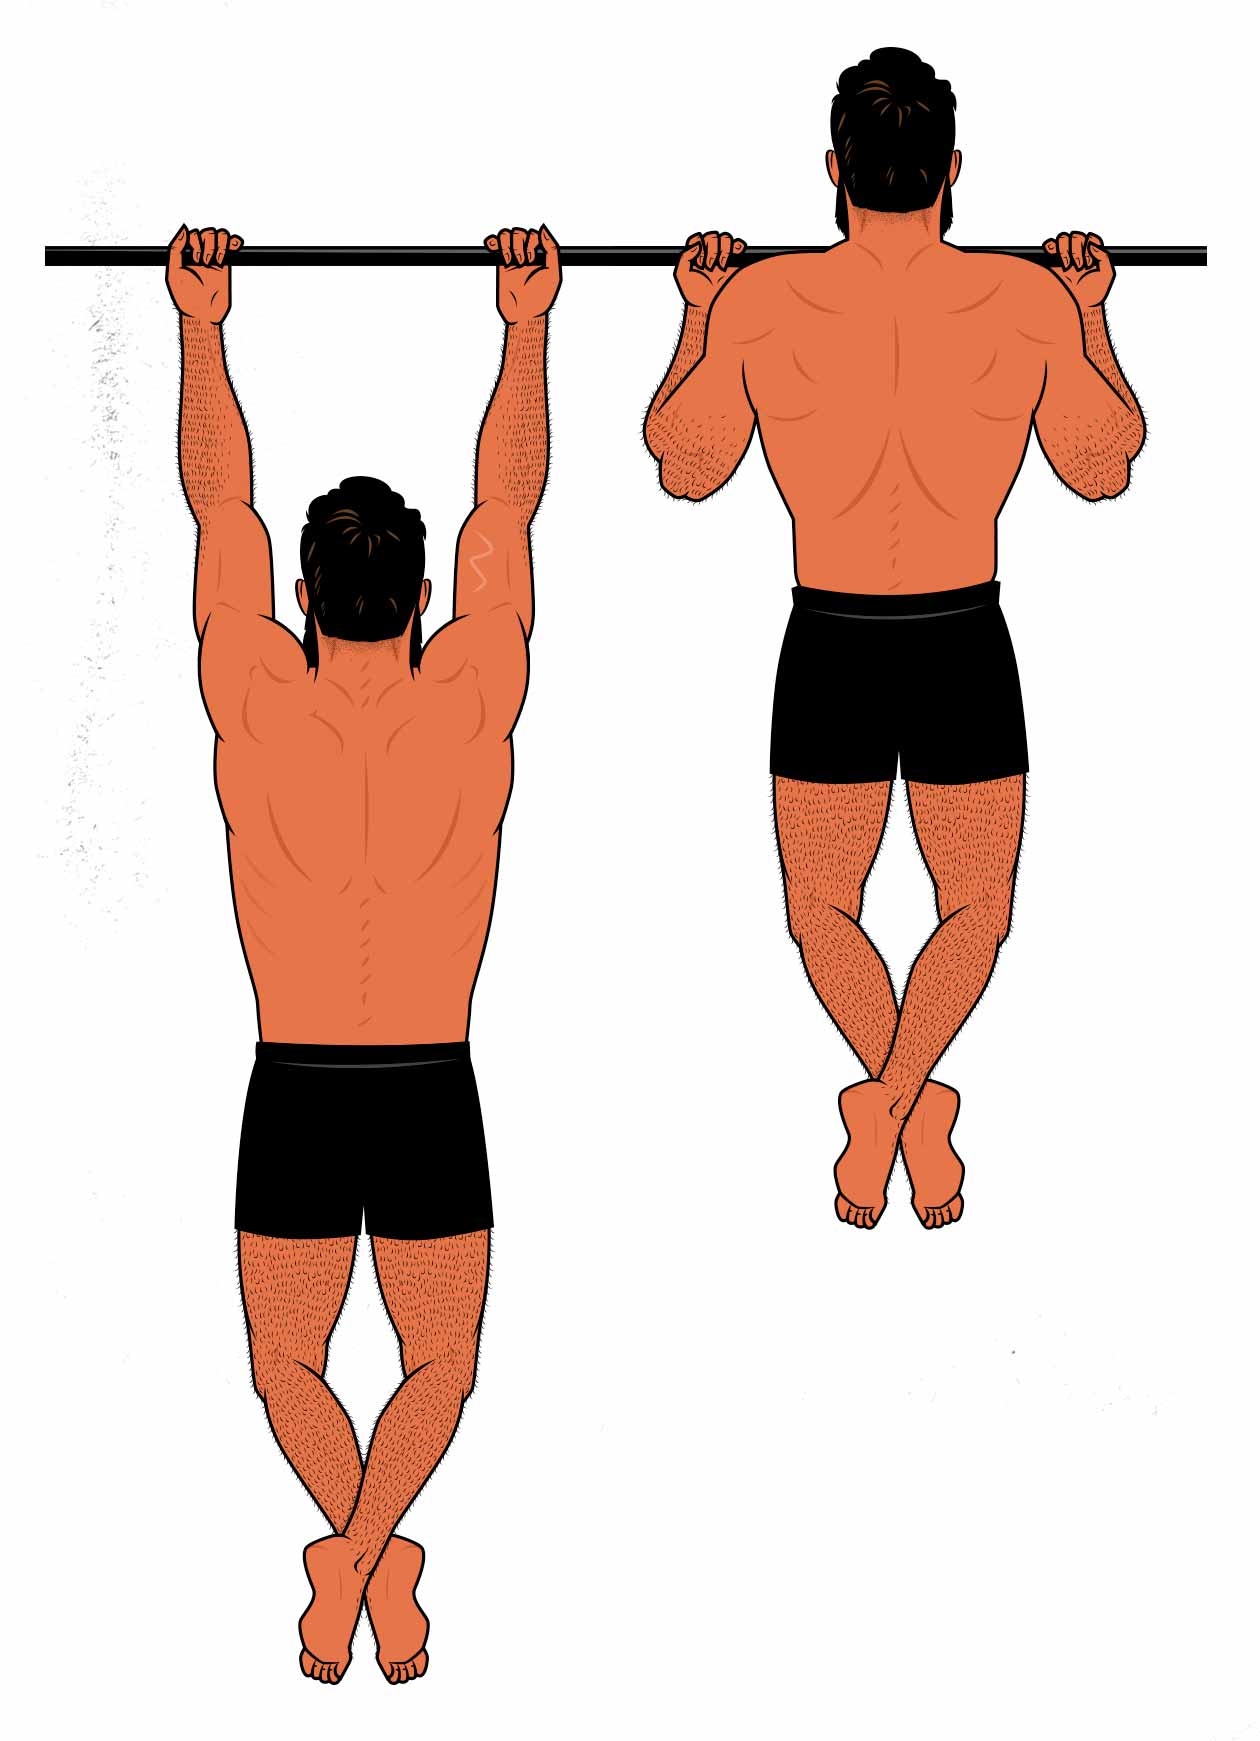 Ilustración de un hombre haciendo chin-ups para ganar músculo.